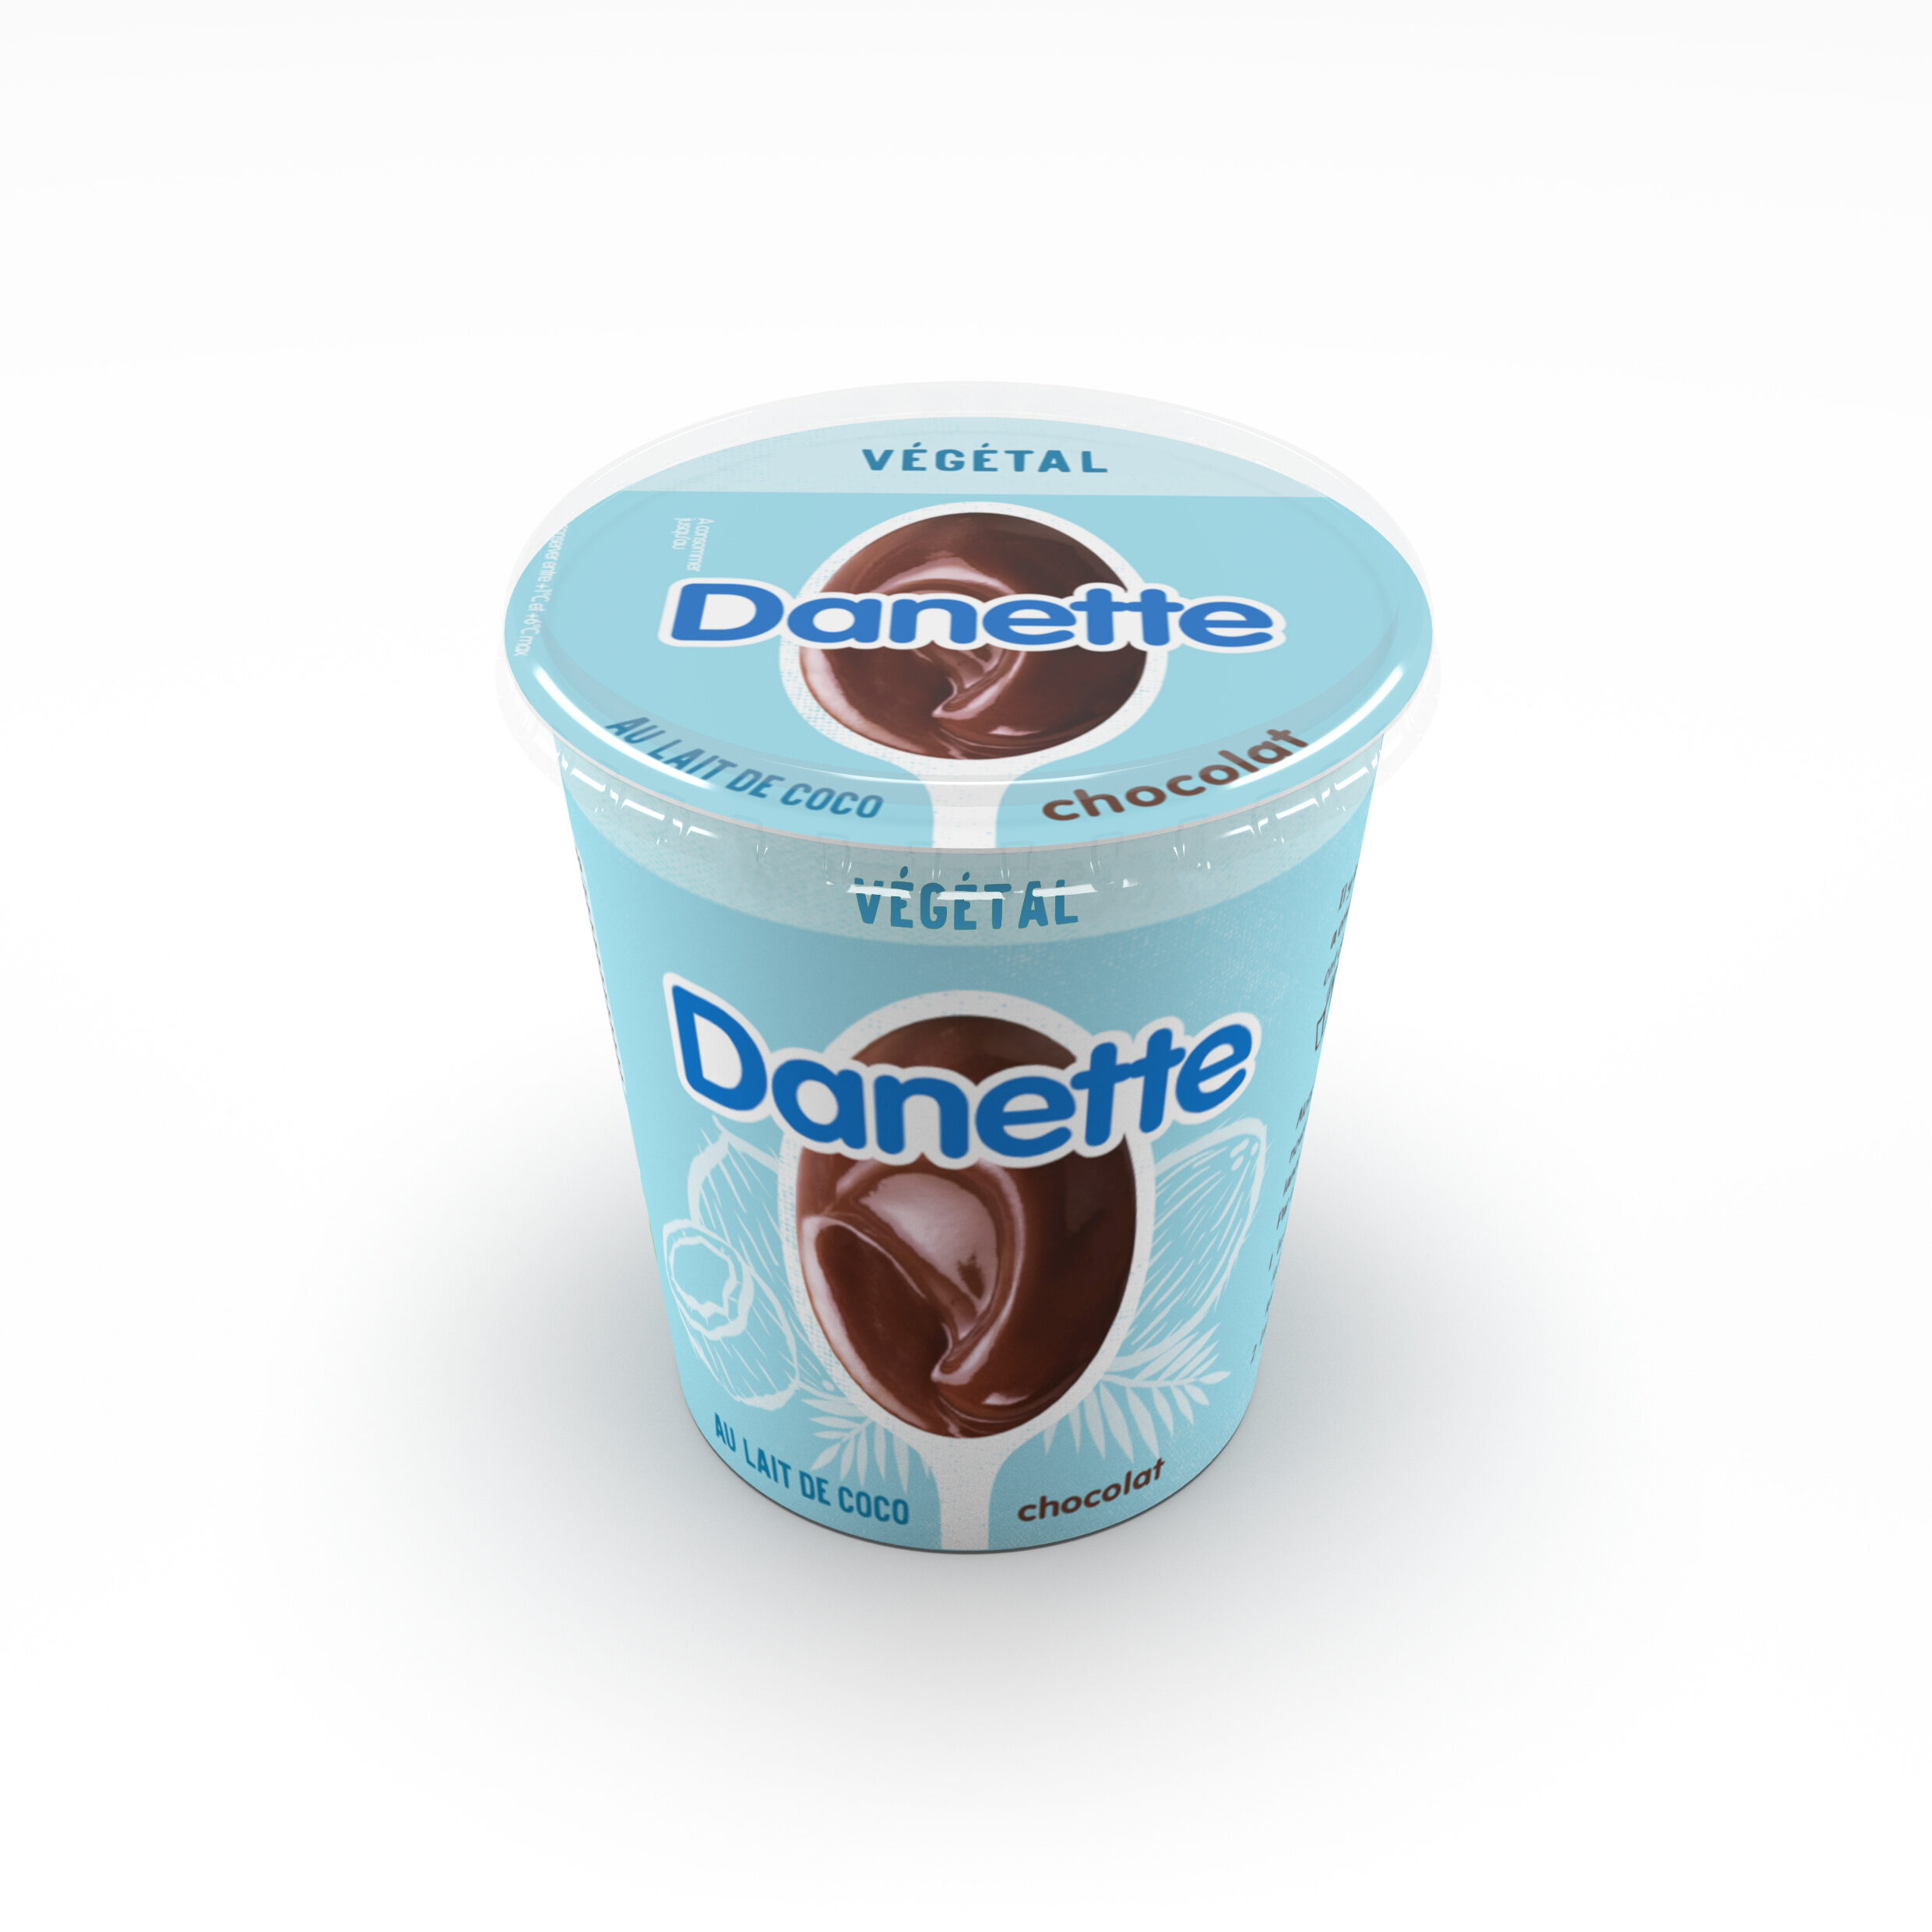 Danette creme dessert vegetale chocolat lait coco 400 g x 1 - Produit